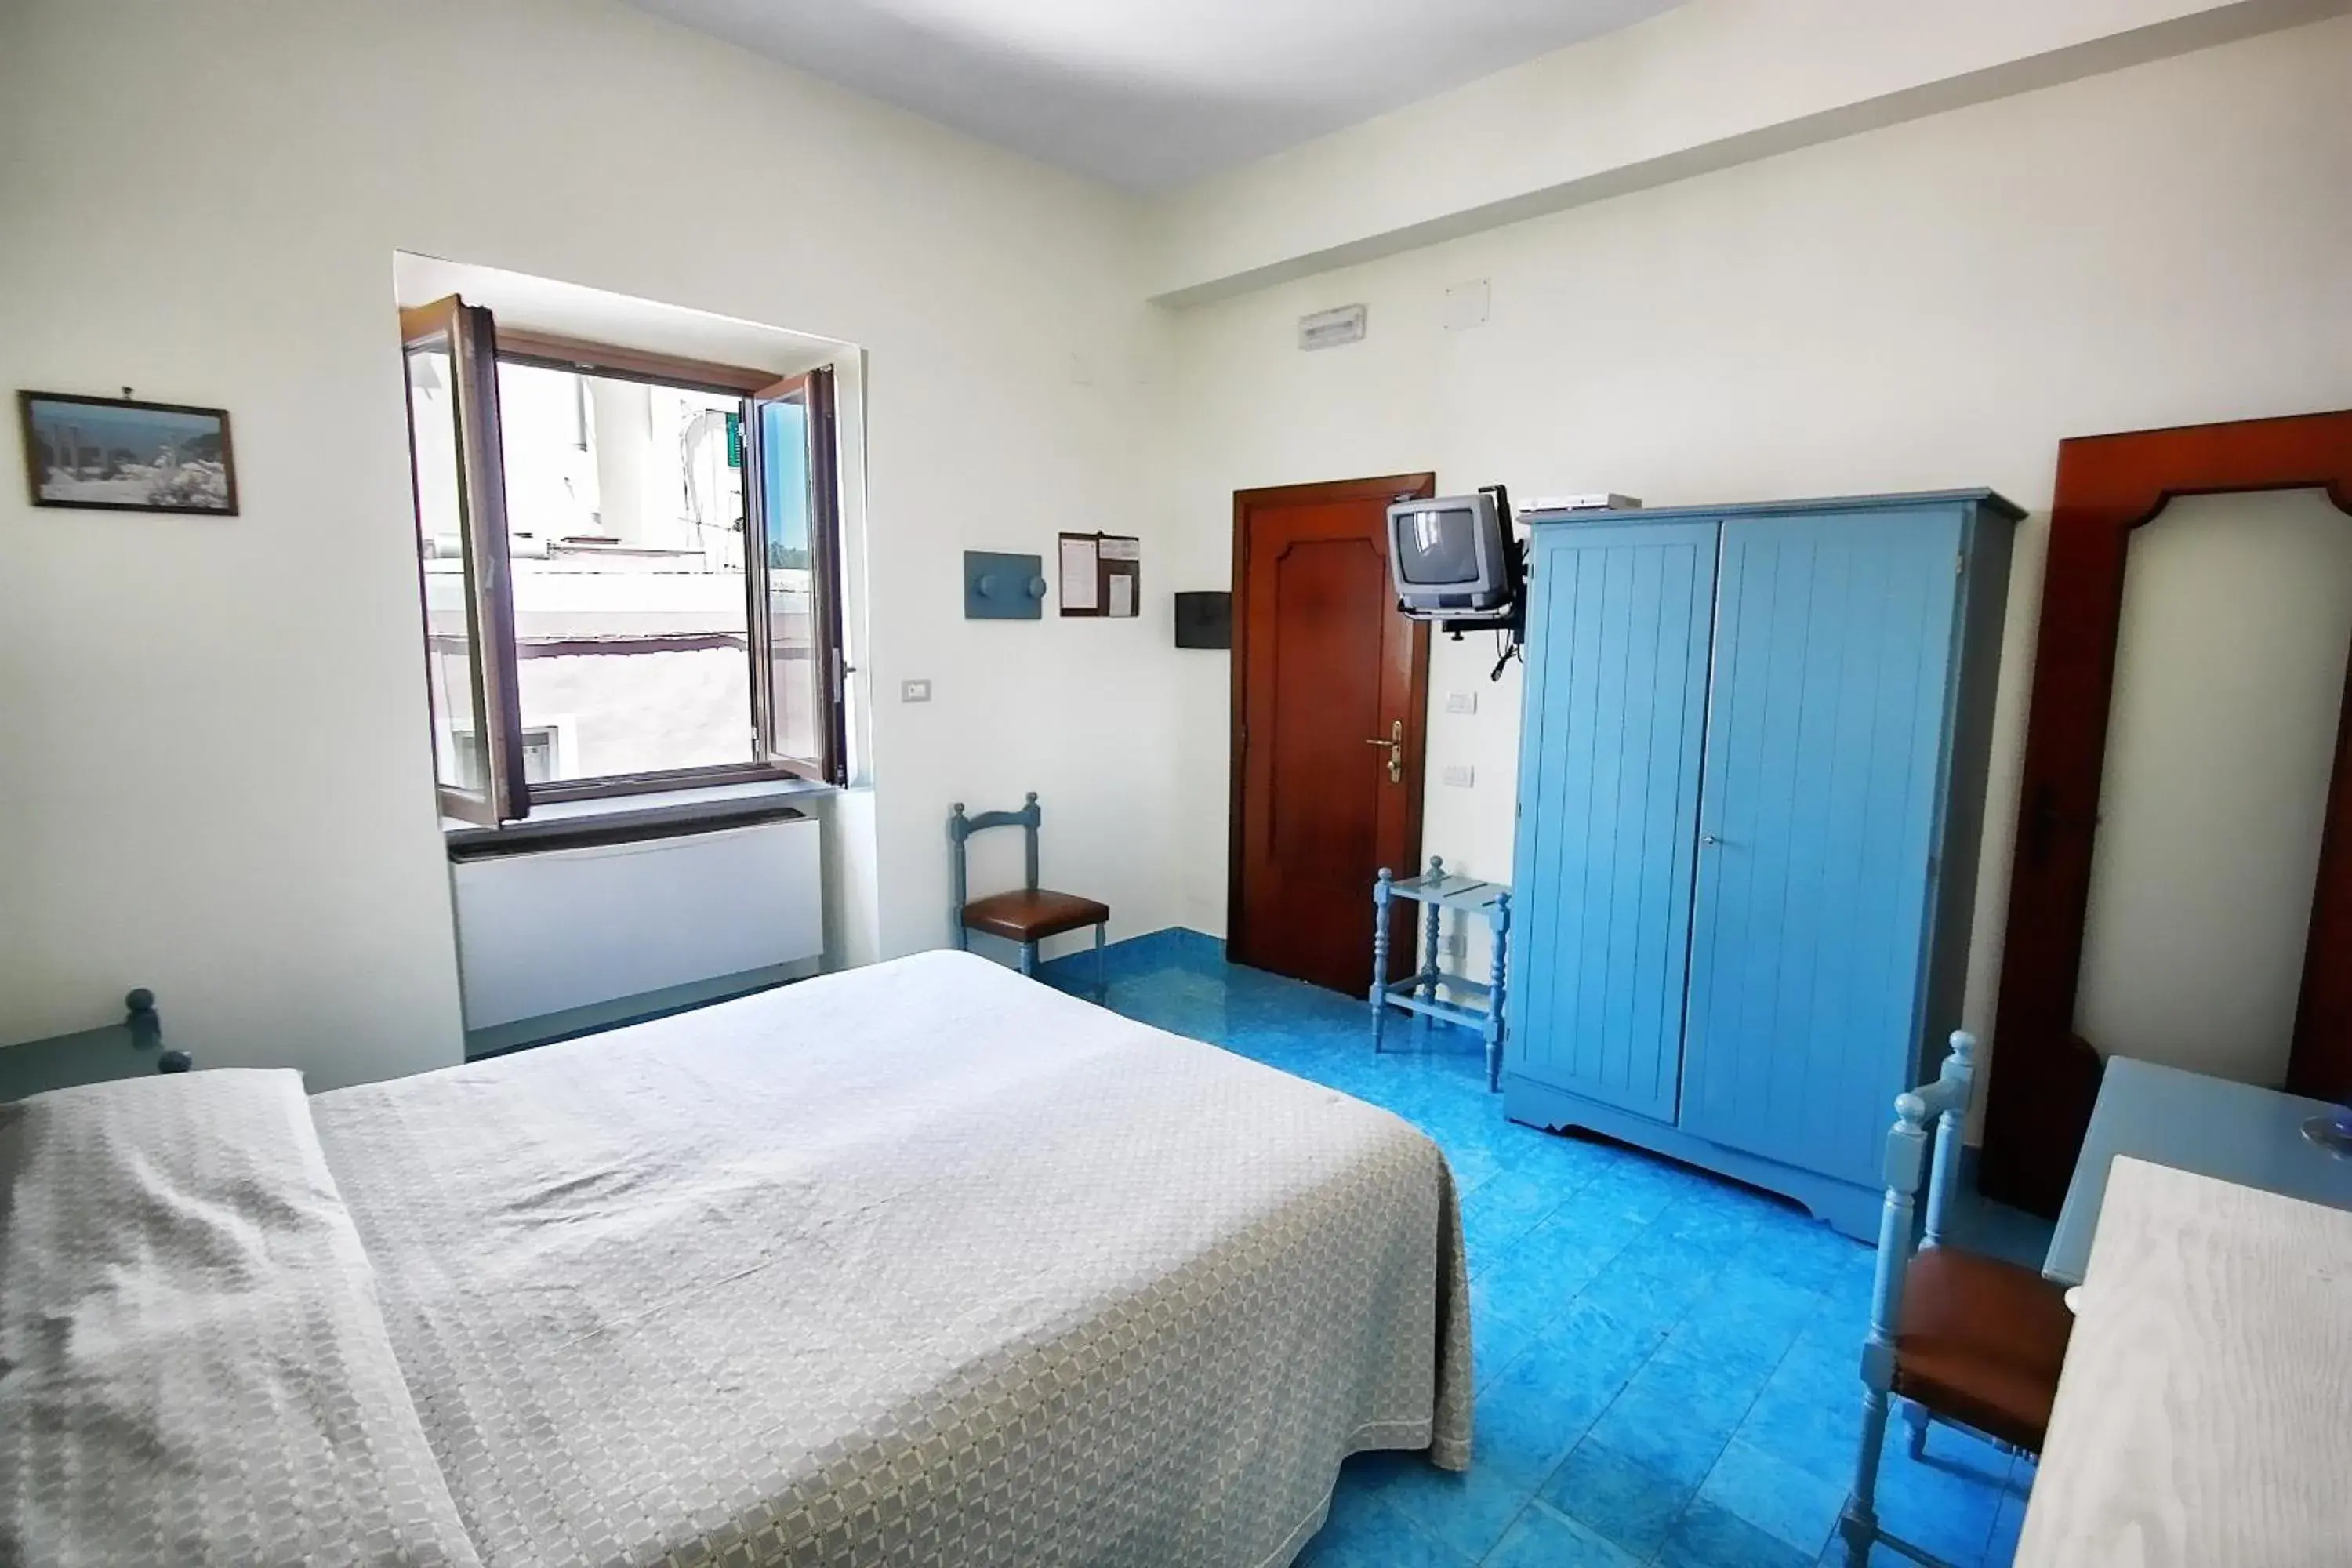 Bedroom in Hotel La Certosa